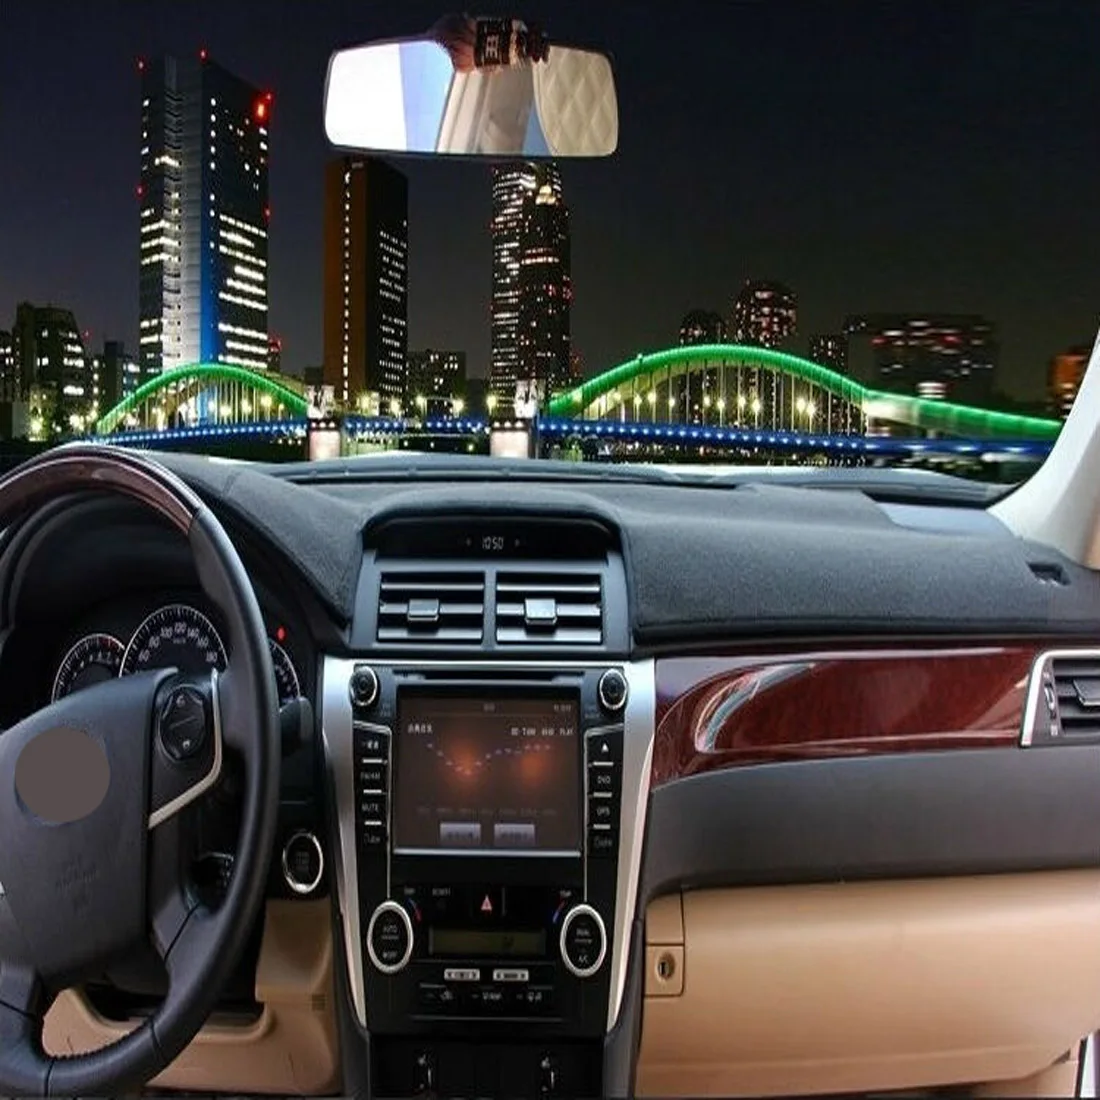 РЖС правая рука Drive приборной панели автомобиля Избегайте свет Pad инструмент крышка платформы стол Коврики ковры для Suzuki SX4